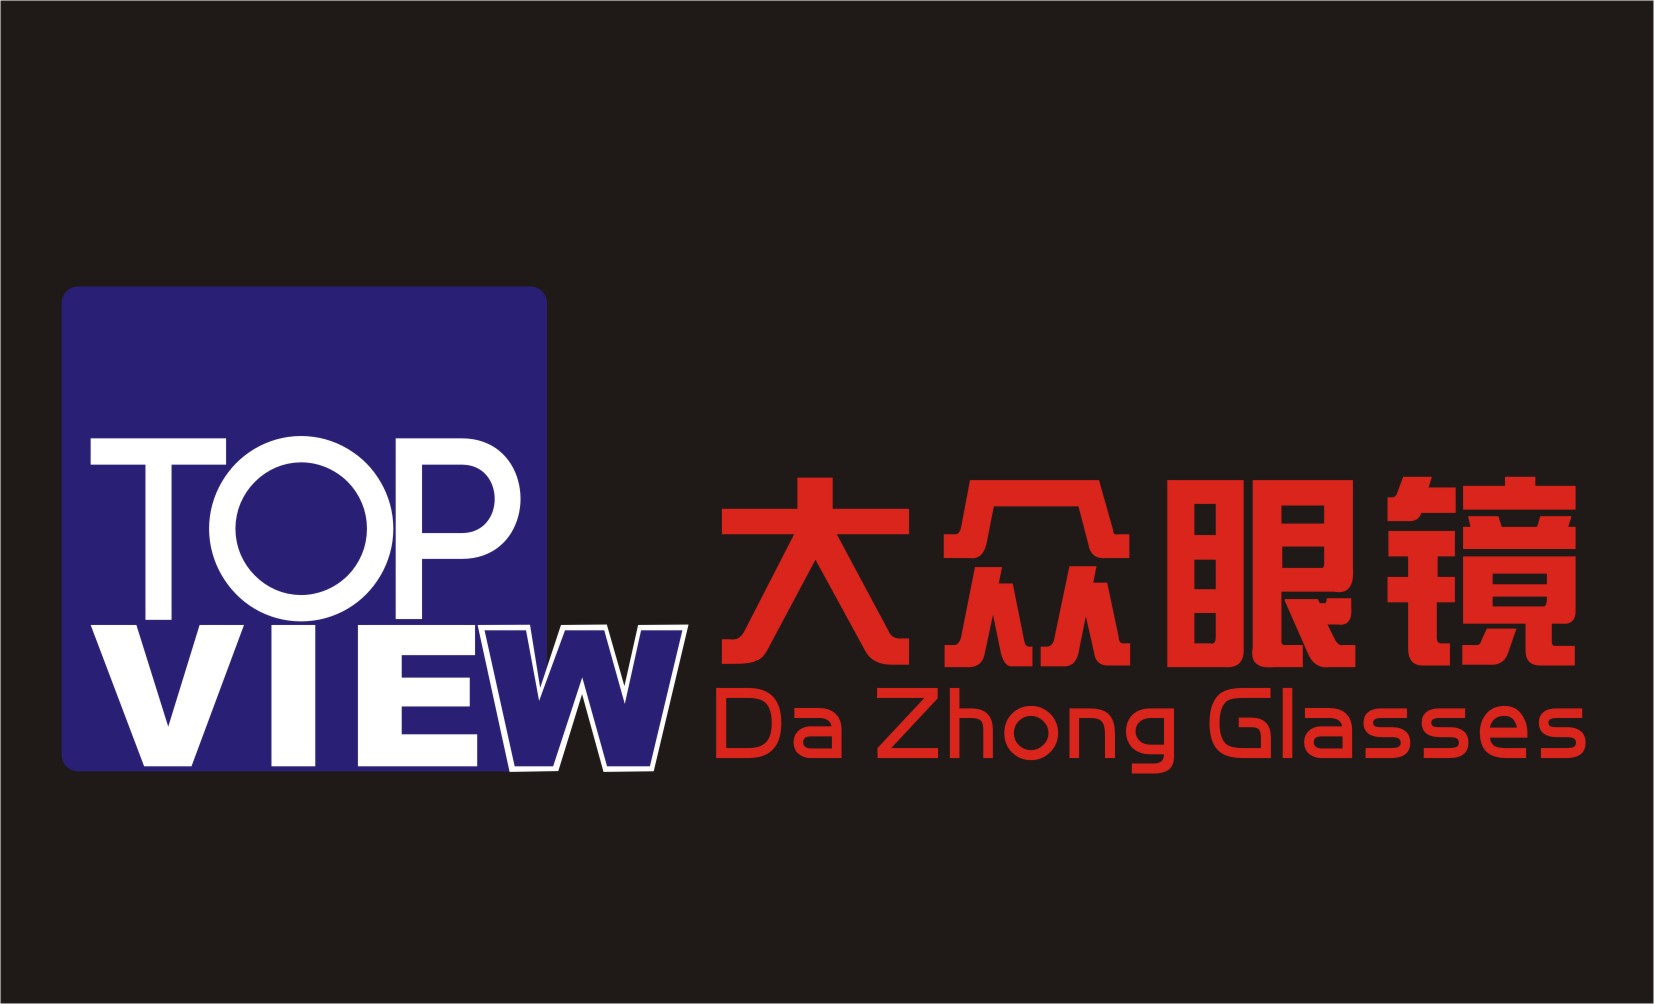 广州市荔湾区顶瞻眼镜商行最新招聘信息